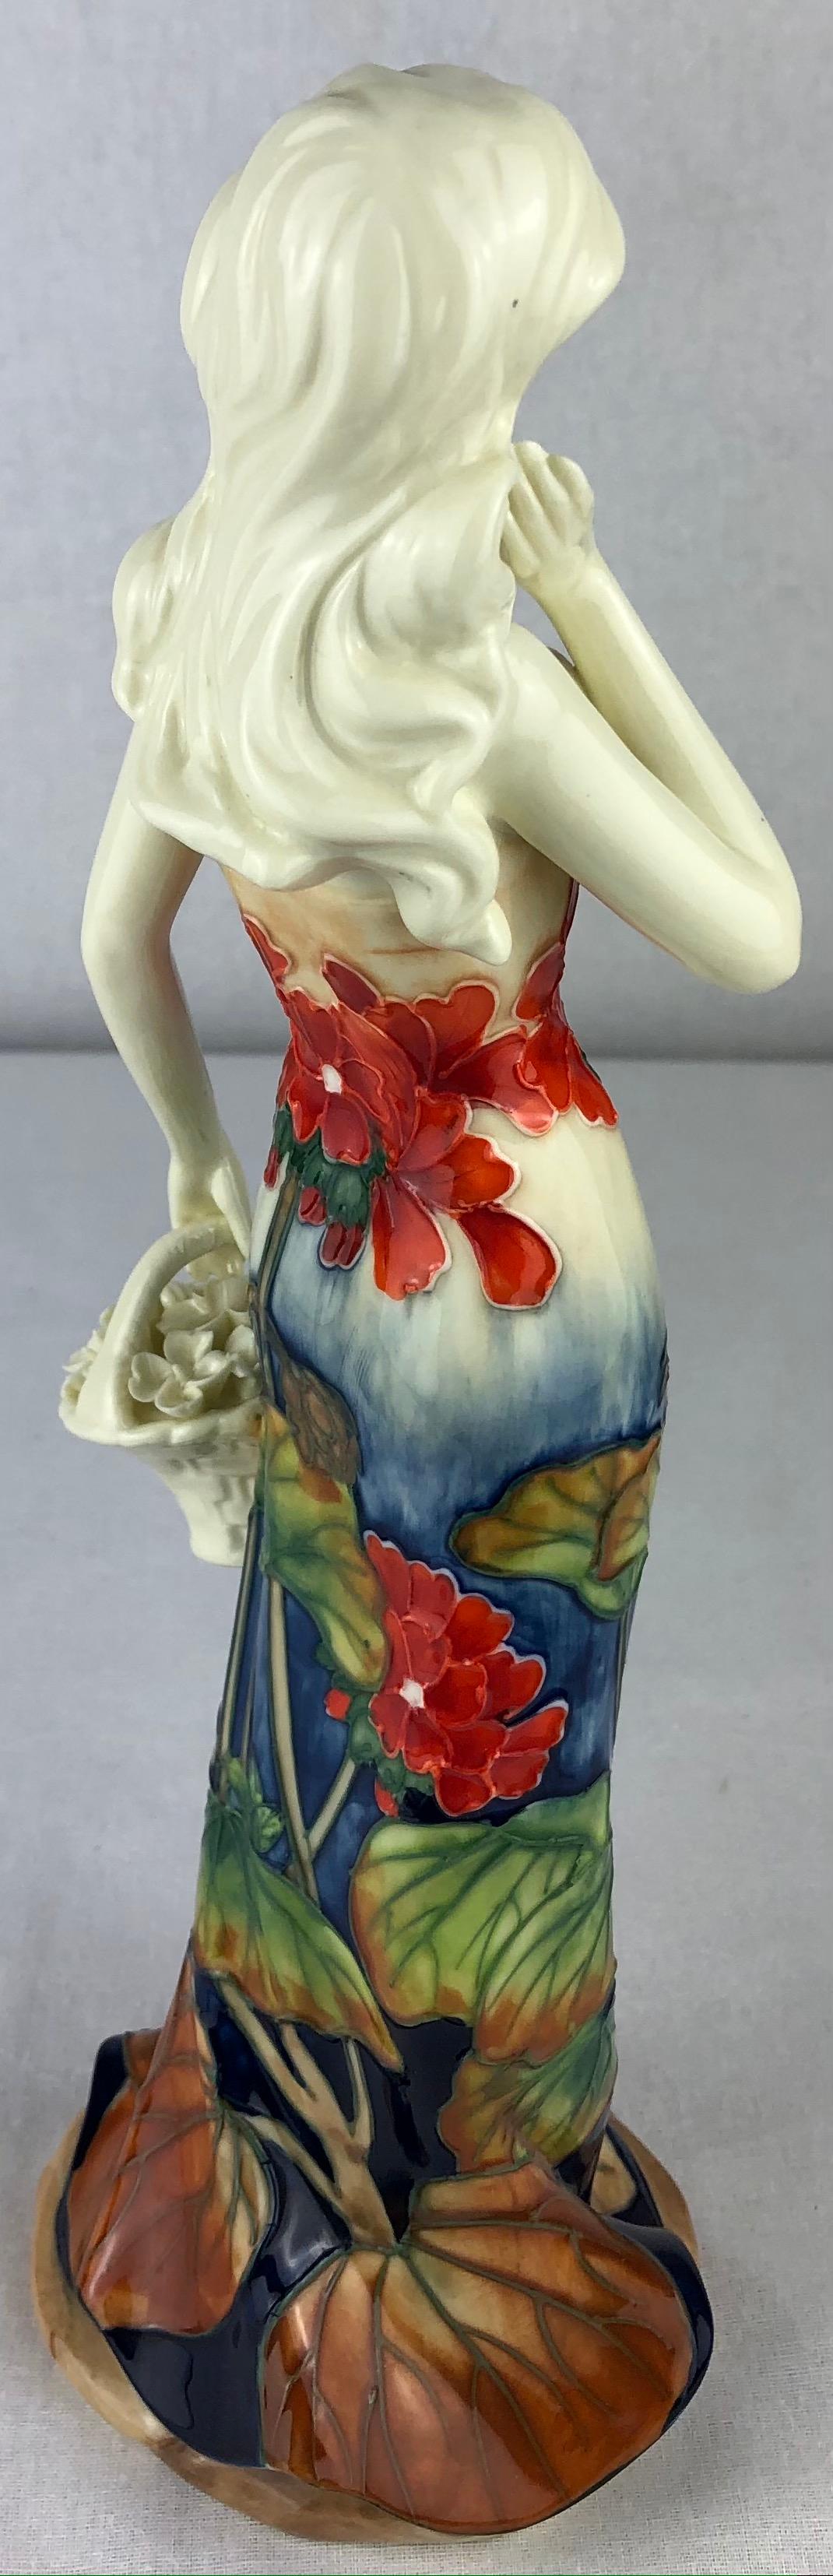 Belle porcelaine d'époque Art Nouveau peinte à la main représentant une femme avec un bouquet de fleurs. 

La décoration se compose de motifs en haut-relief et de couleurs accrocheuses comme le bleu:: le beige:: le rouge et le vert. 
Porte la marque